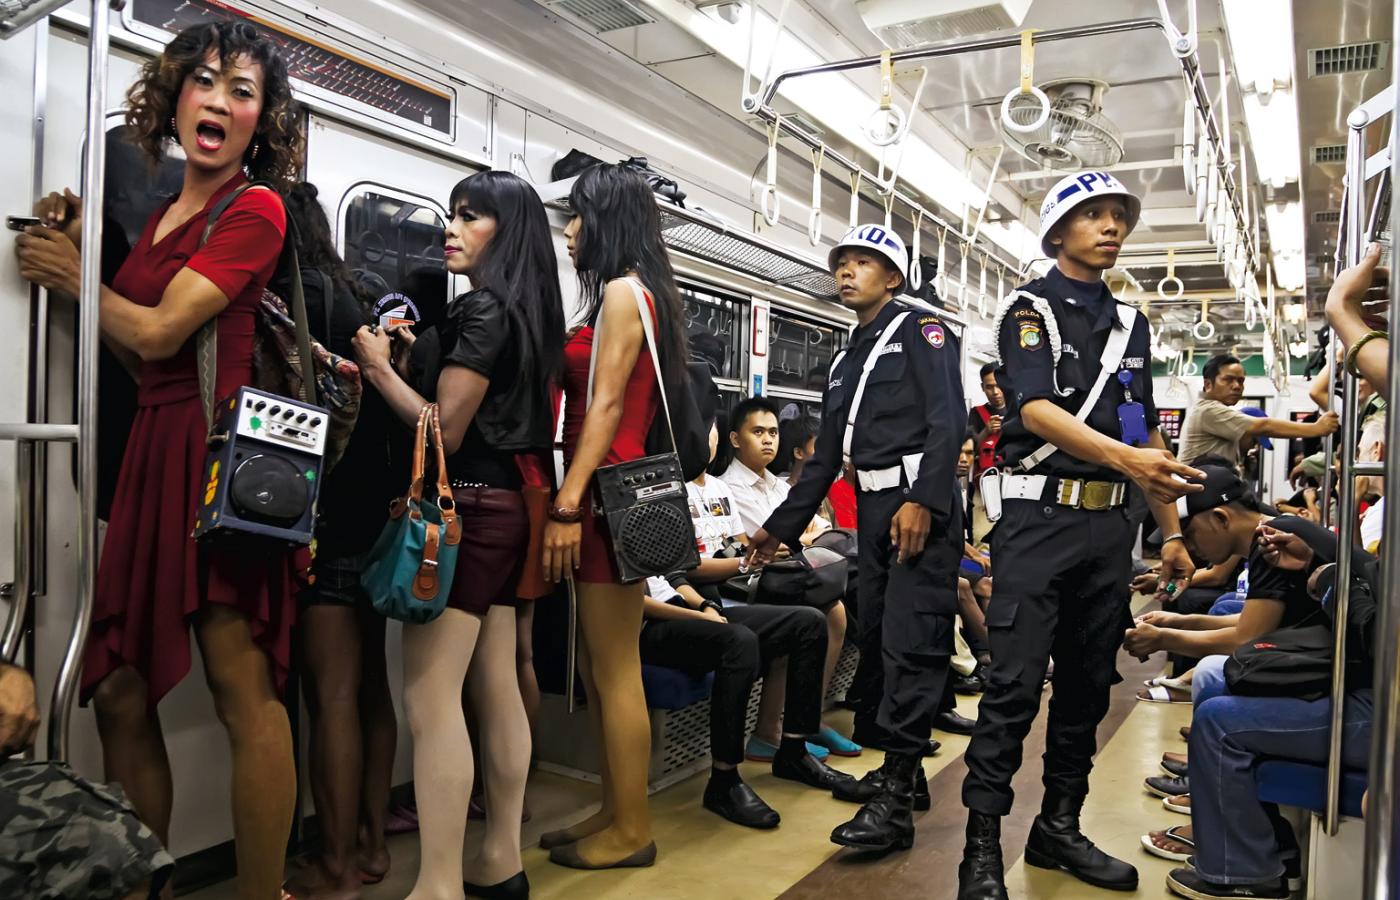 Metro w Dżakarcie, przedstawiciele(ki) trzeciej płci w drodze do pracy - na uliczne występy.